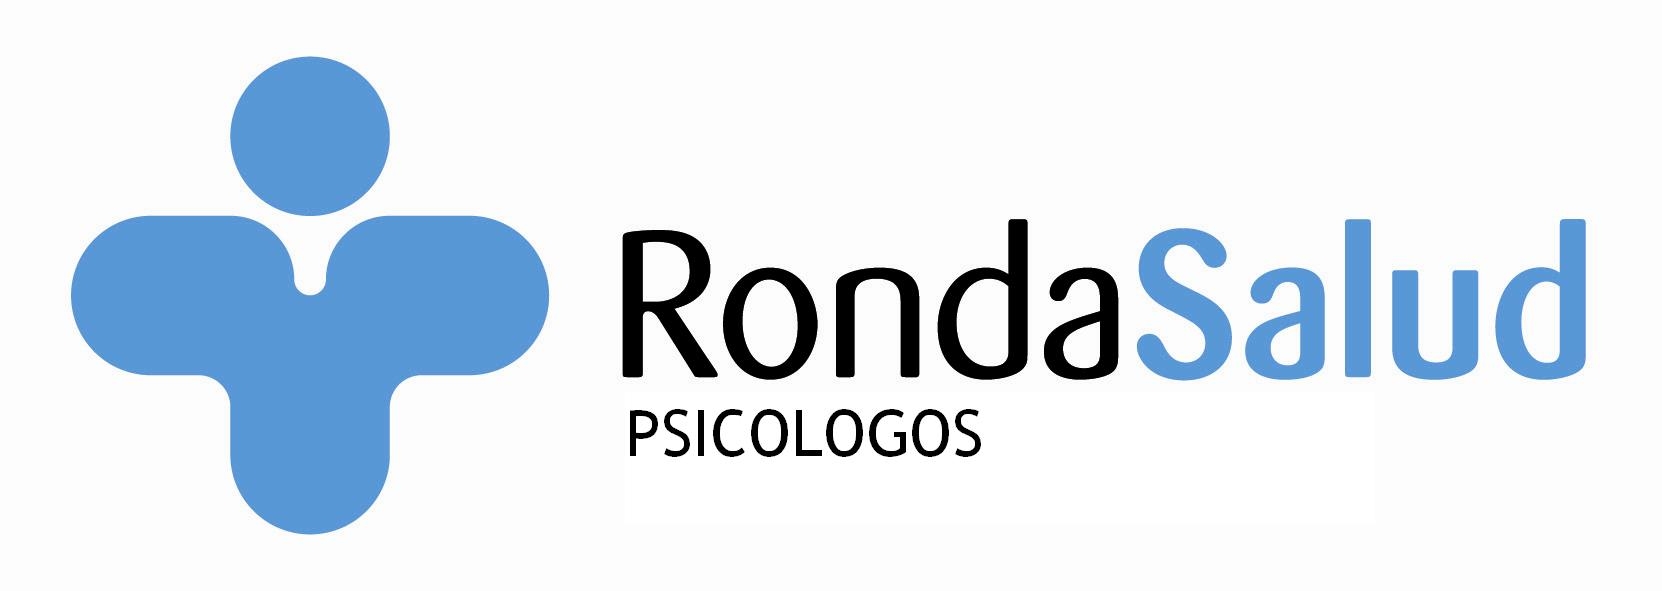 Logotipo de la clínica Rondasalud Psicólogos Málaga